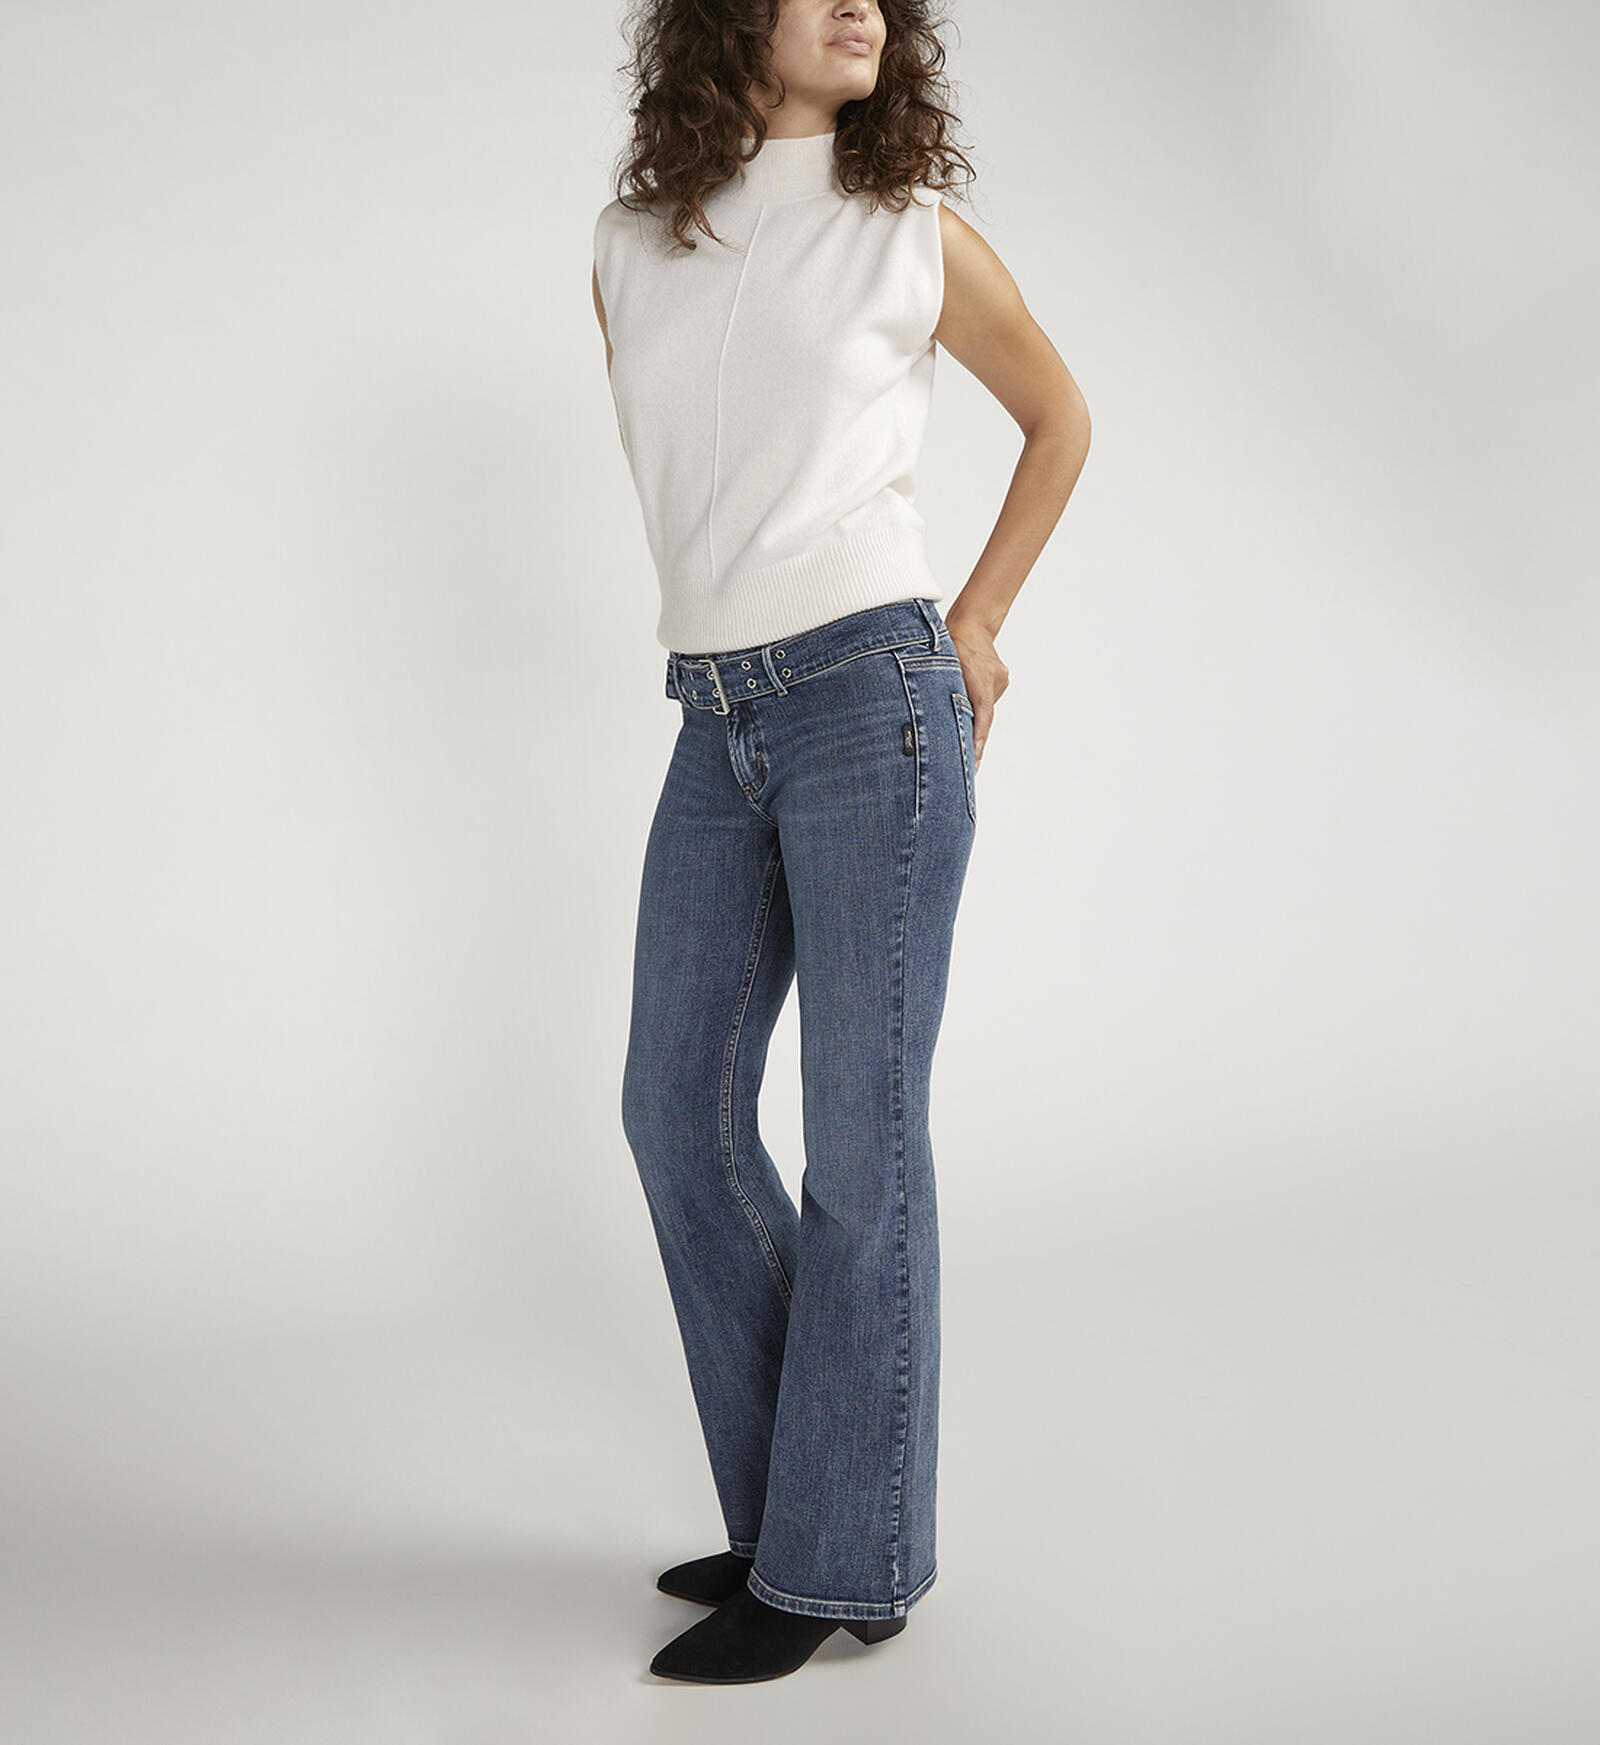 Best Denim Flared Jeans For Women